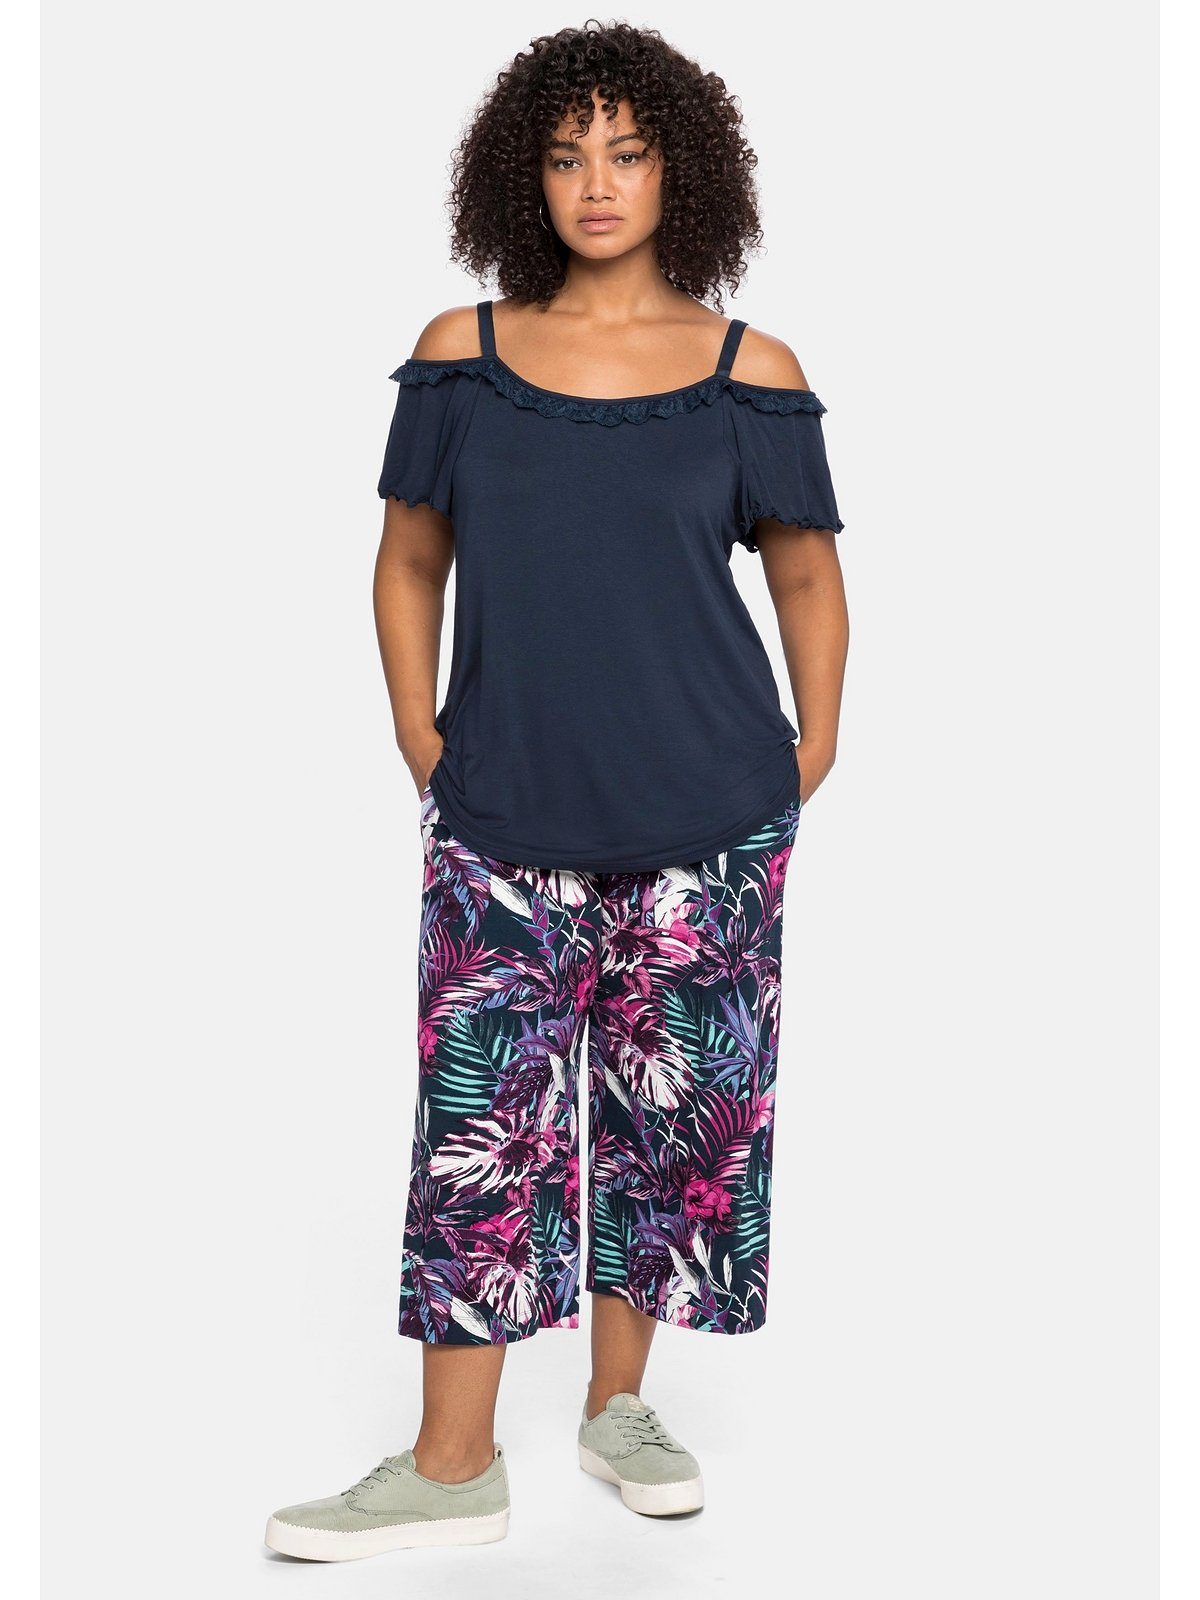 Sheego T-Shirt Große Größen im mit Flügelärmeln Carmen-Stil